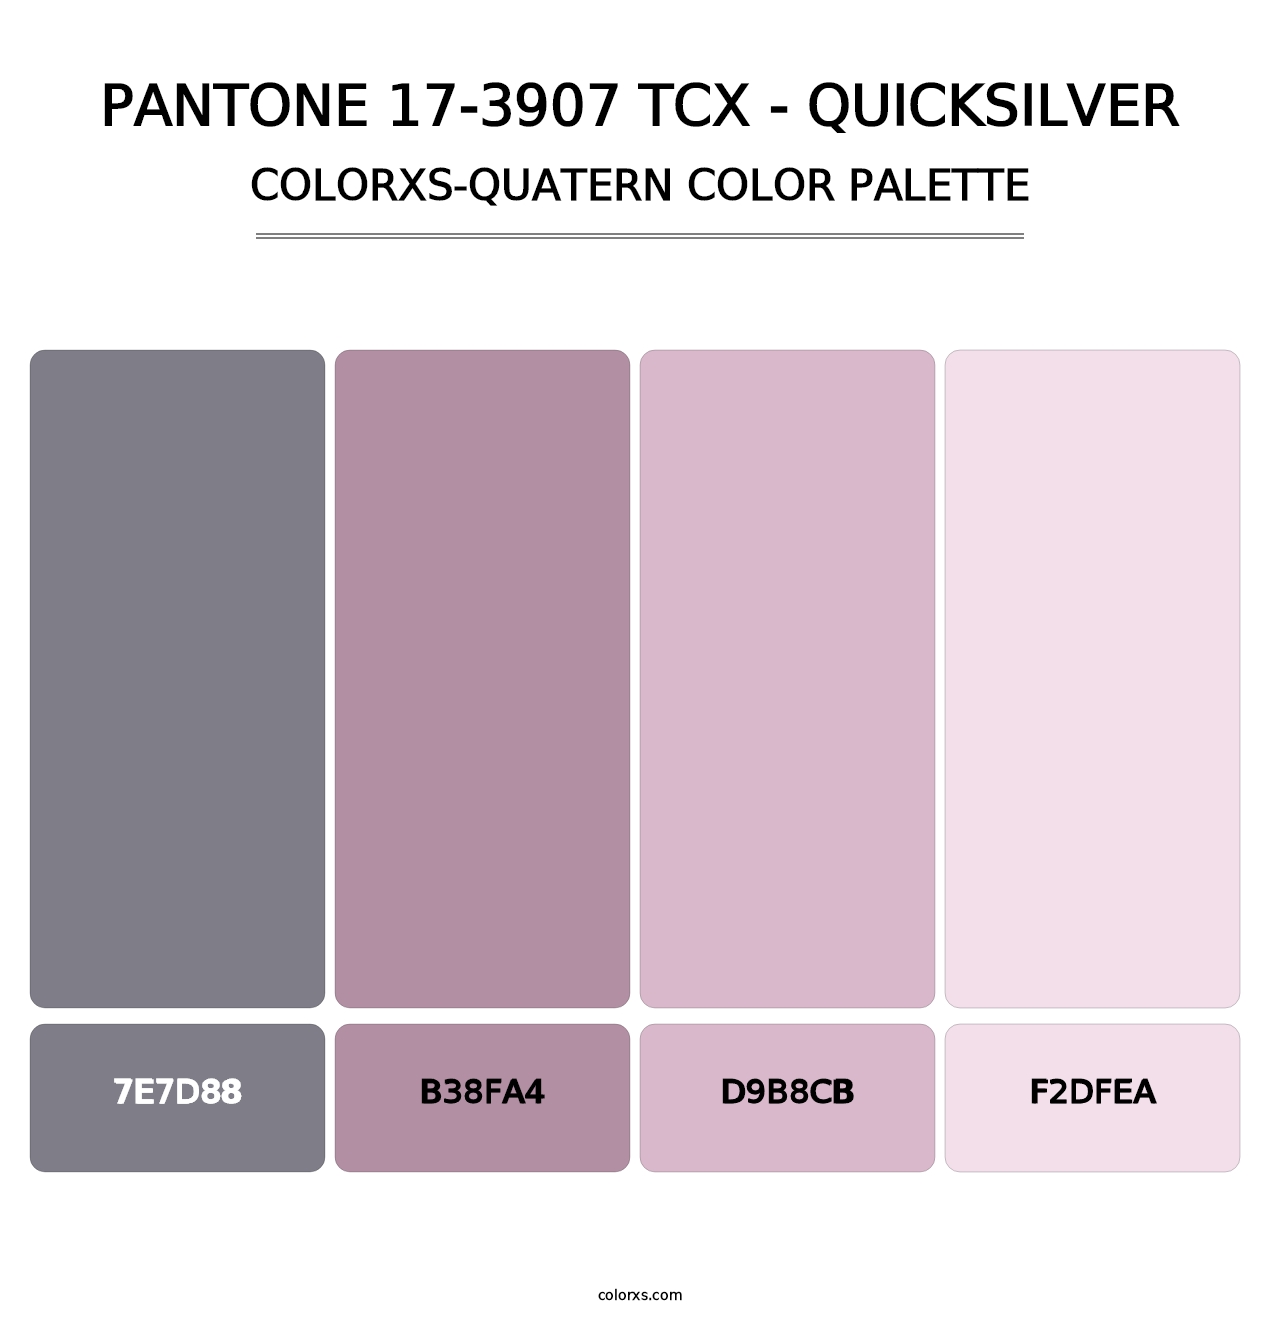 PANTONE 17-3907 TCX - Quicksilver - Colorxs Quatern Palette